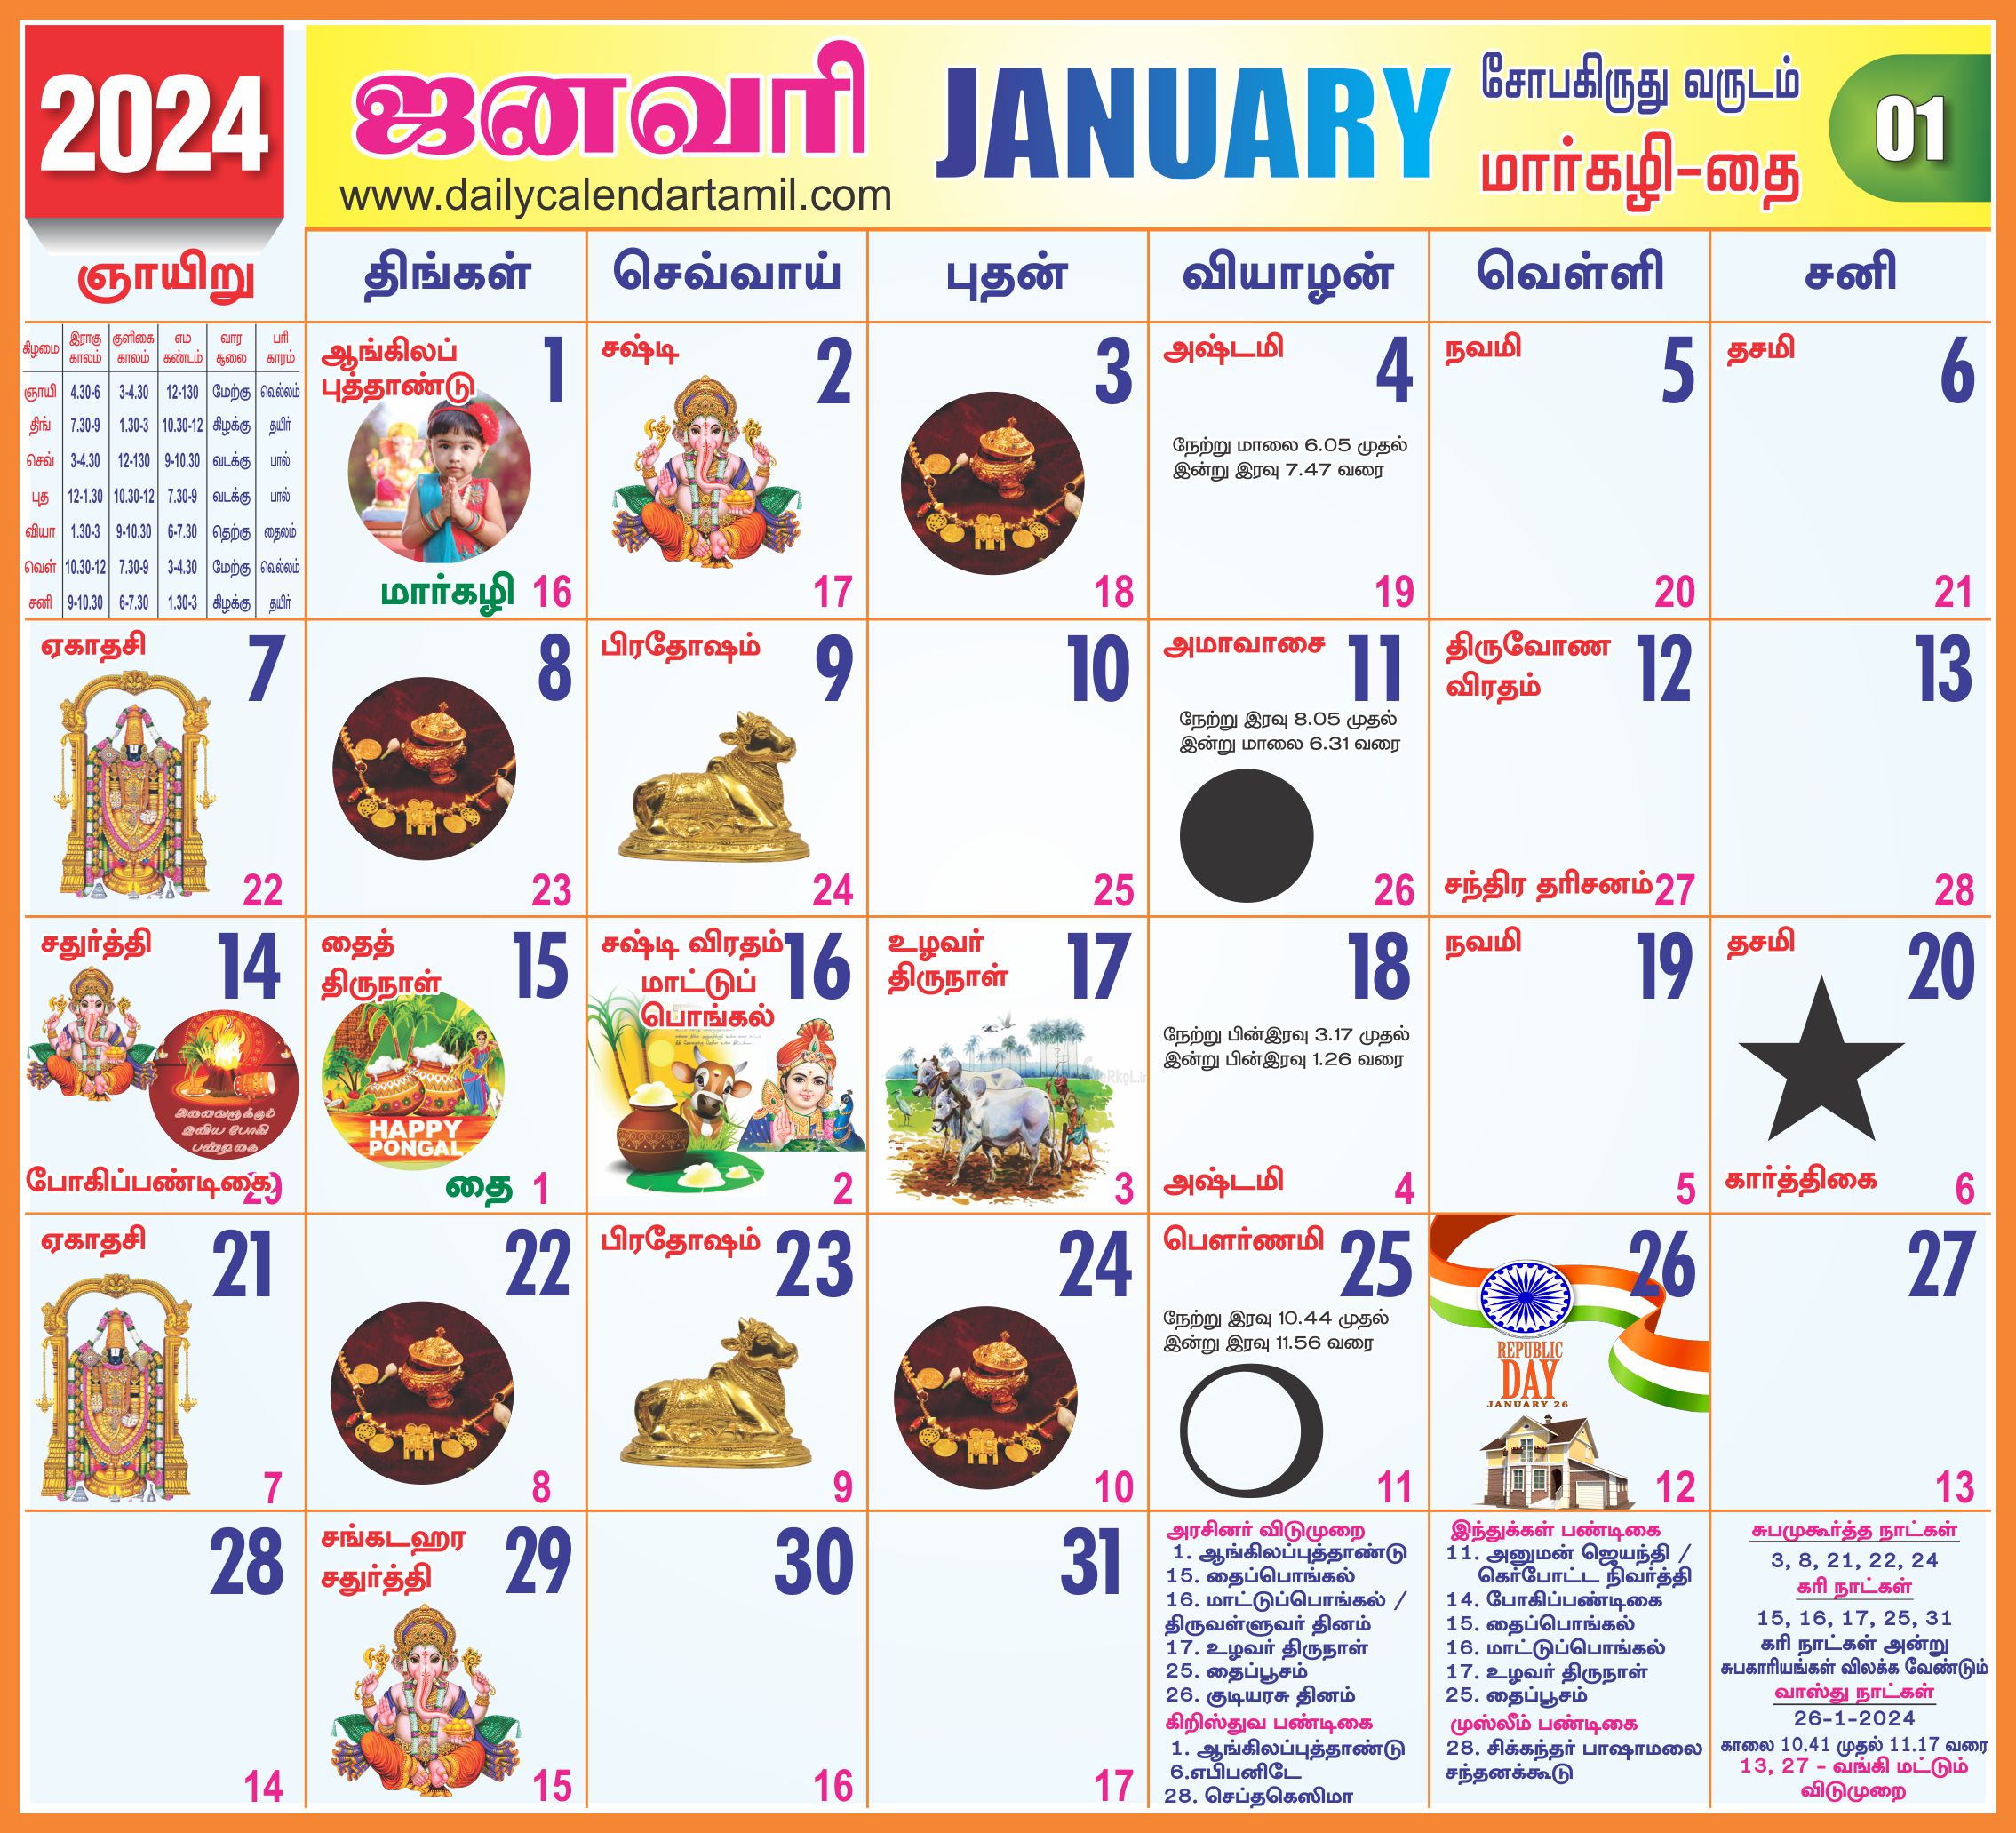 Tamil Calendar 2022 Usa Tamil Calendar January 2022 | தமிழ் காலண்டர் 2022